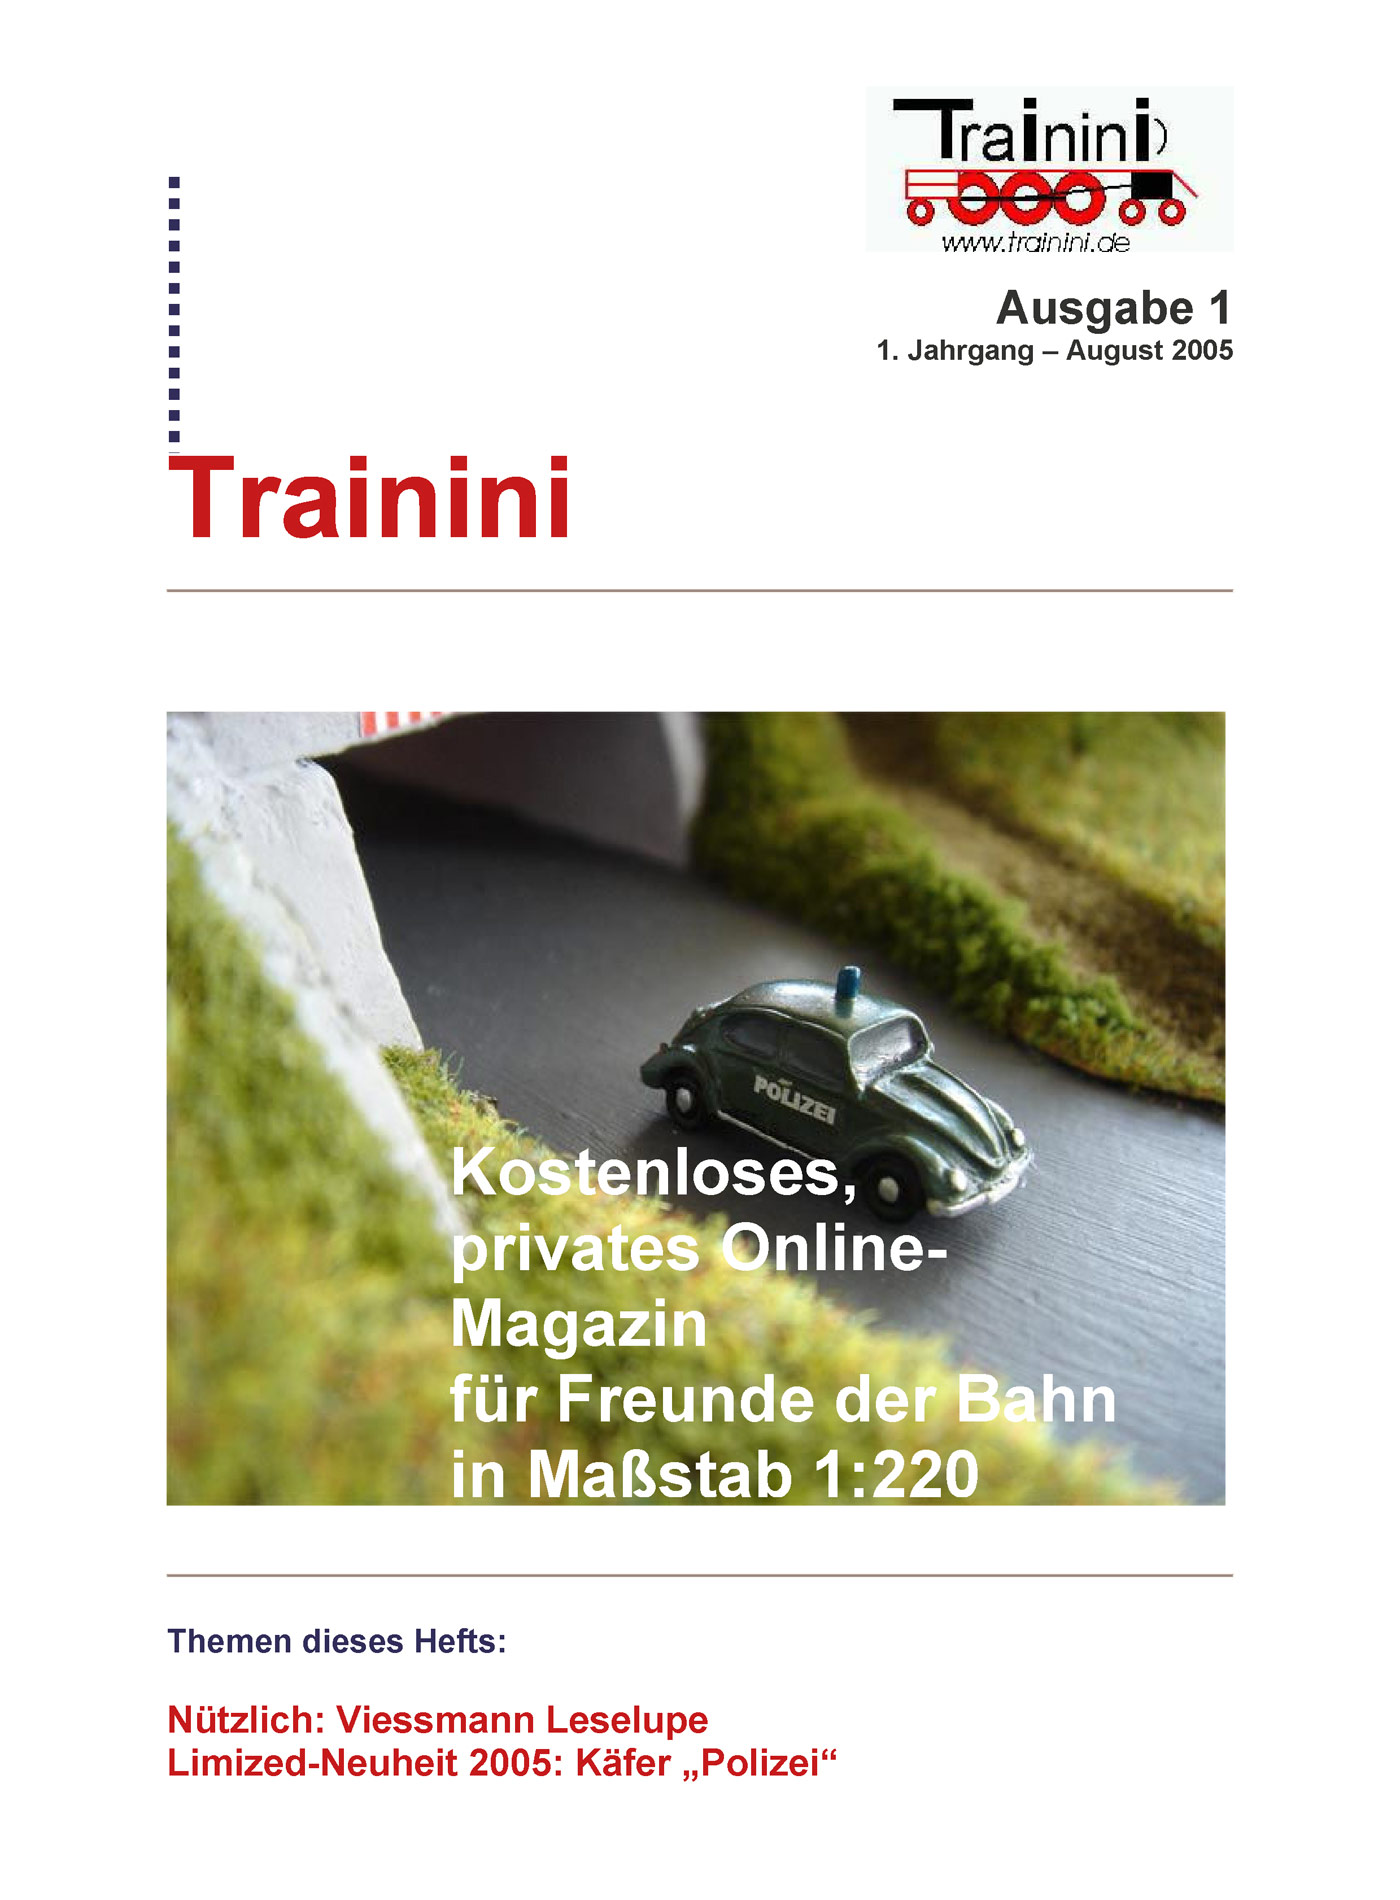 Trainini Ausgabe August 2005